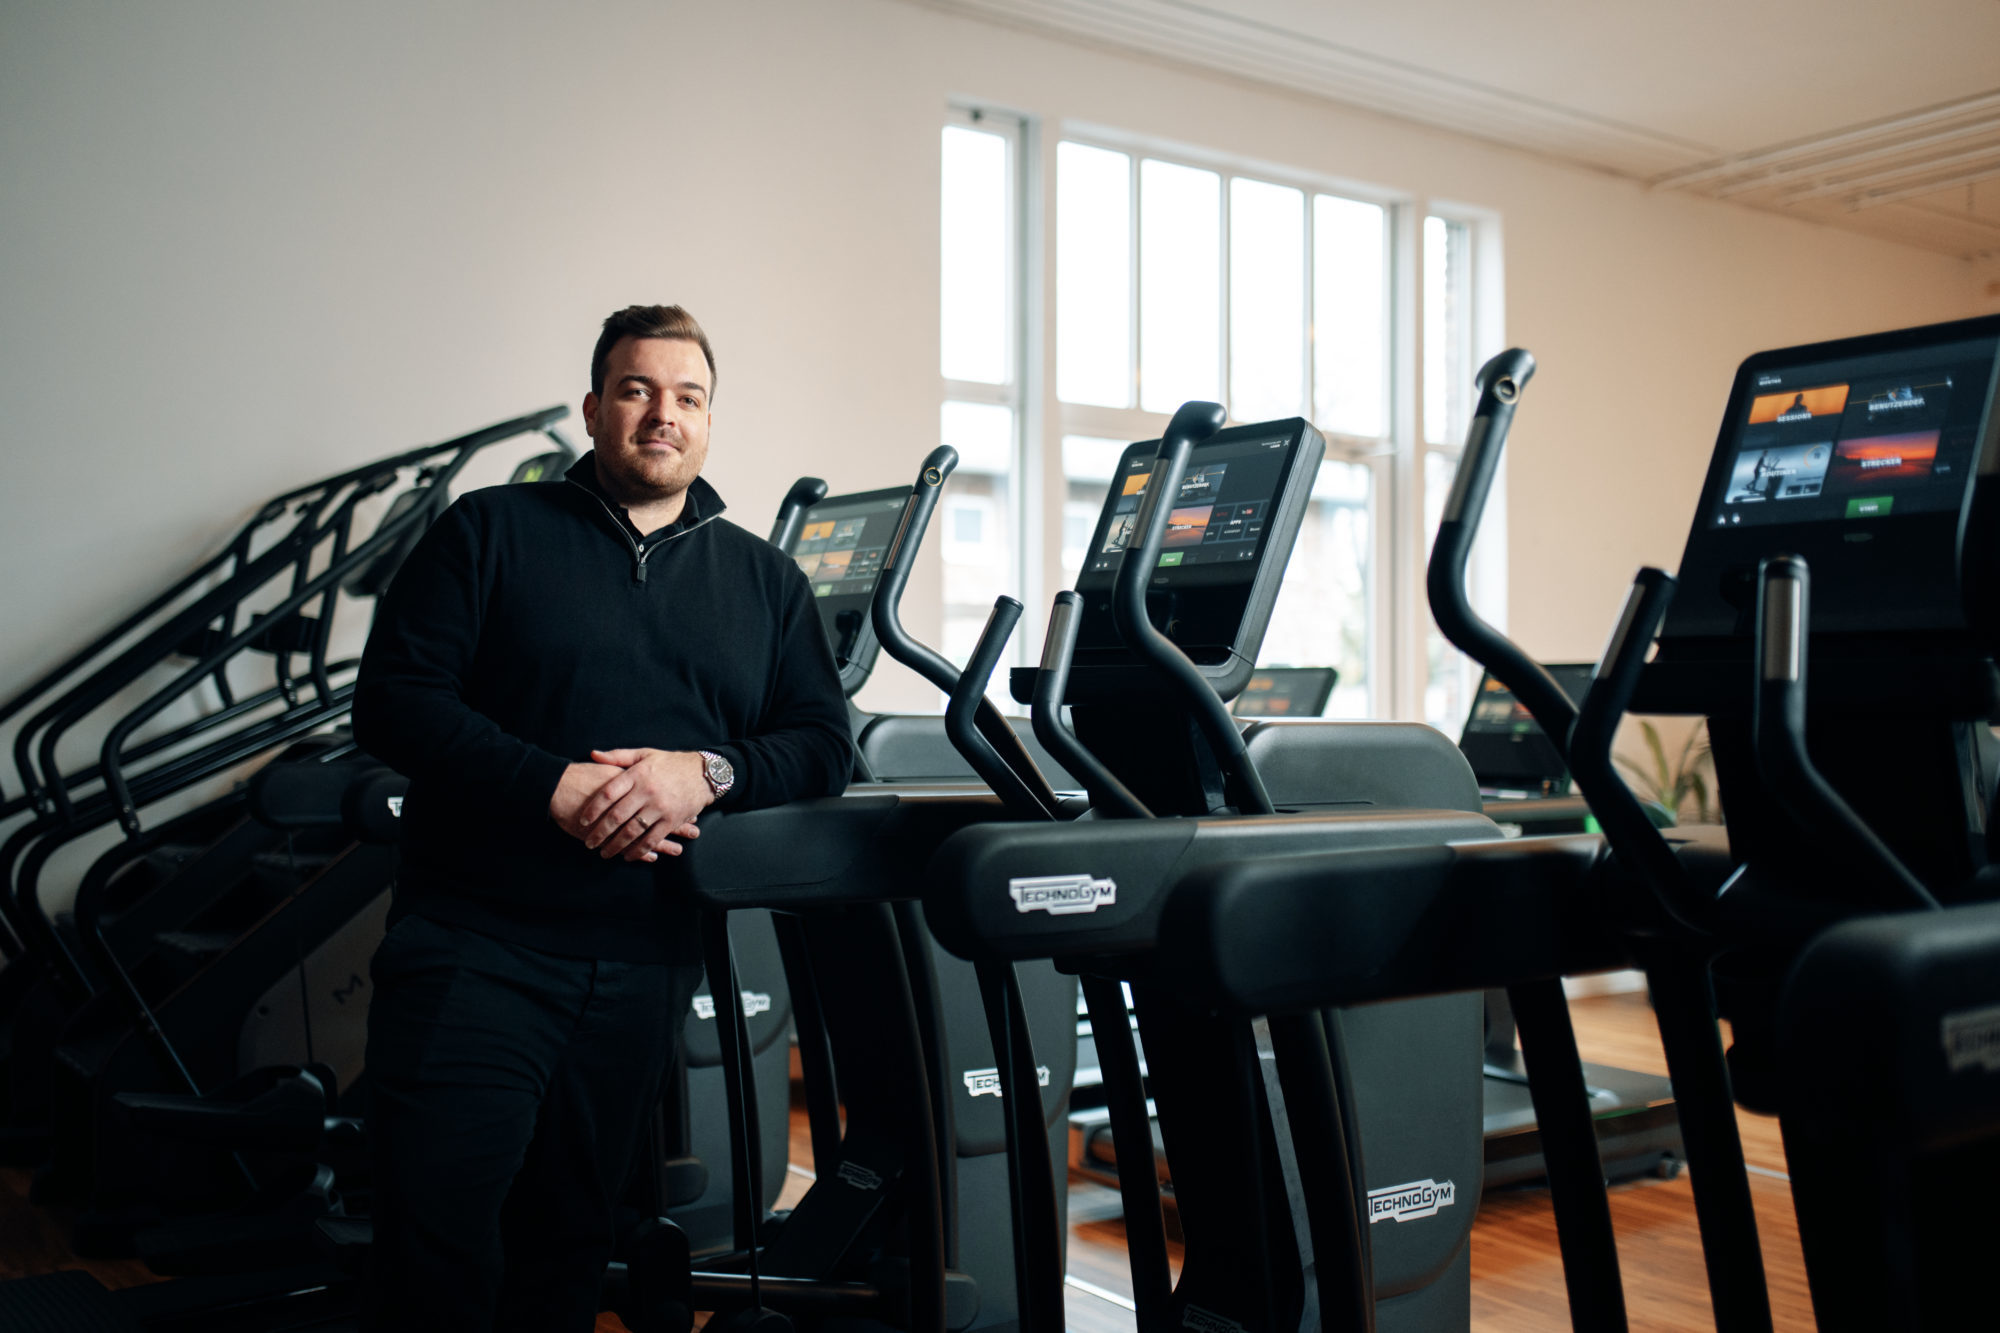 Daniel Erpenbach - Gründer und Inhaber der SPORTS AND MOTION Fitnessclubs in einem Standort in Erftstadt.